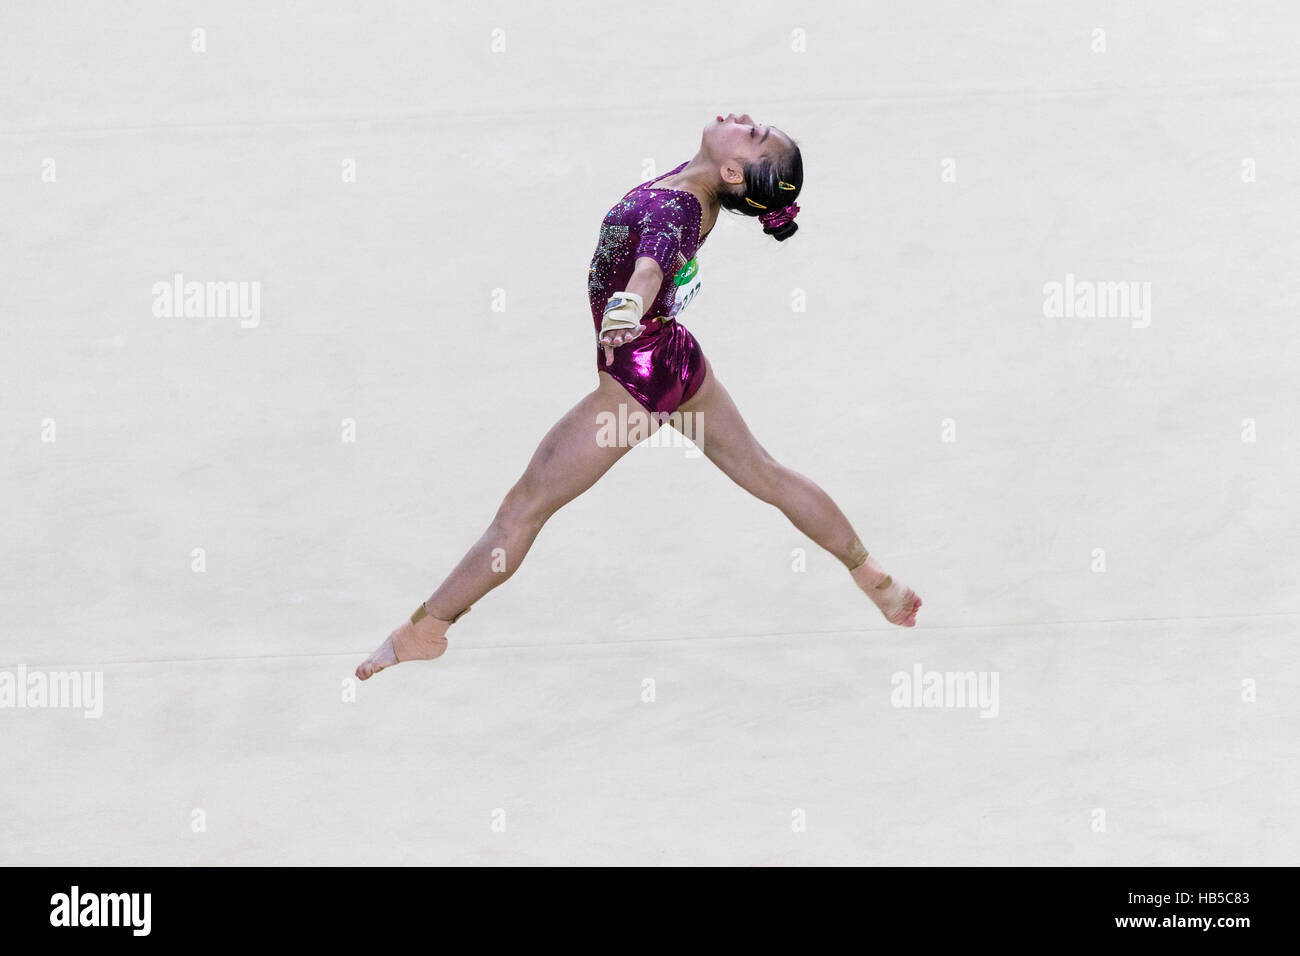 Rio de Janeiro, Brasile. Il 9 agosto 2016. Chunsong Shang (CHN) esegue l'esercitazione del pavimento dring team competition al 2016 Olimpiadi estive. ©Pau Foto Stock